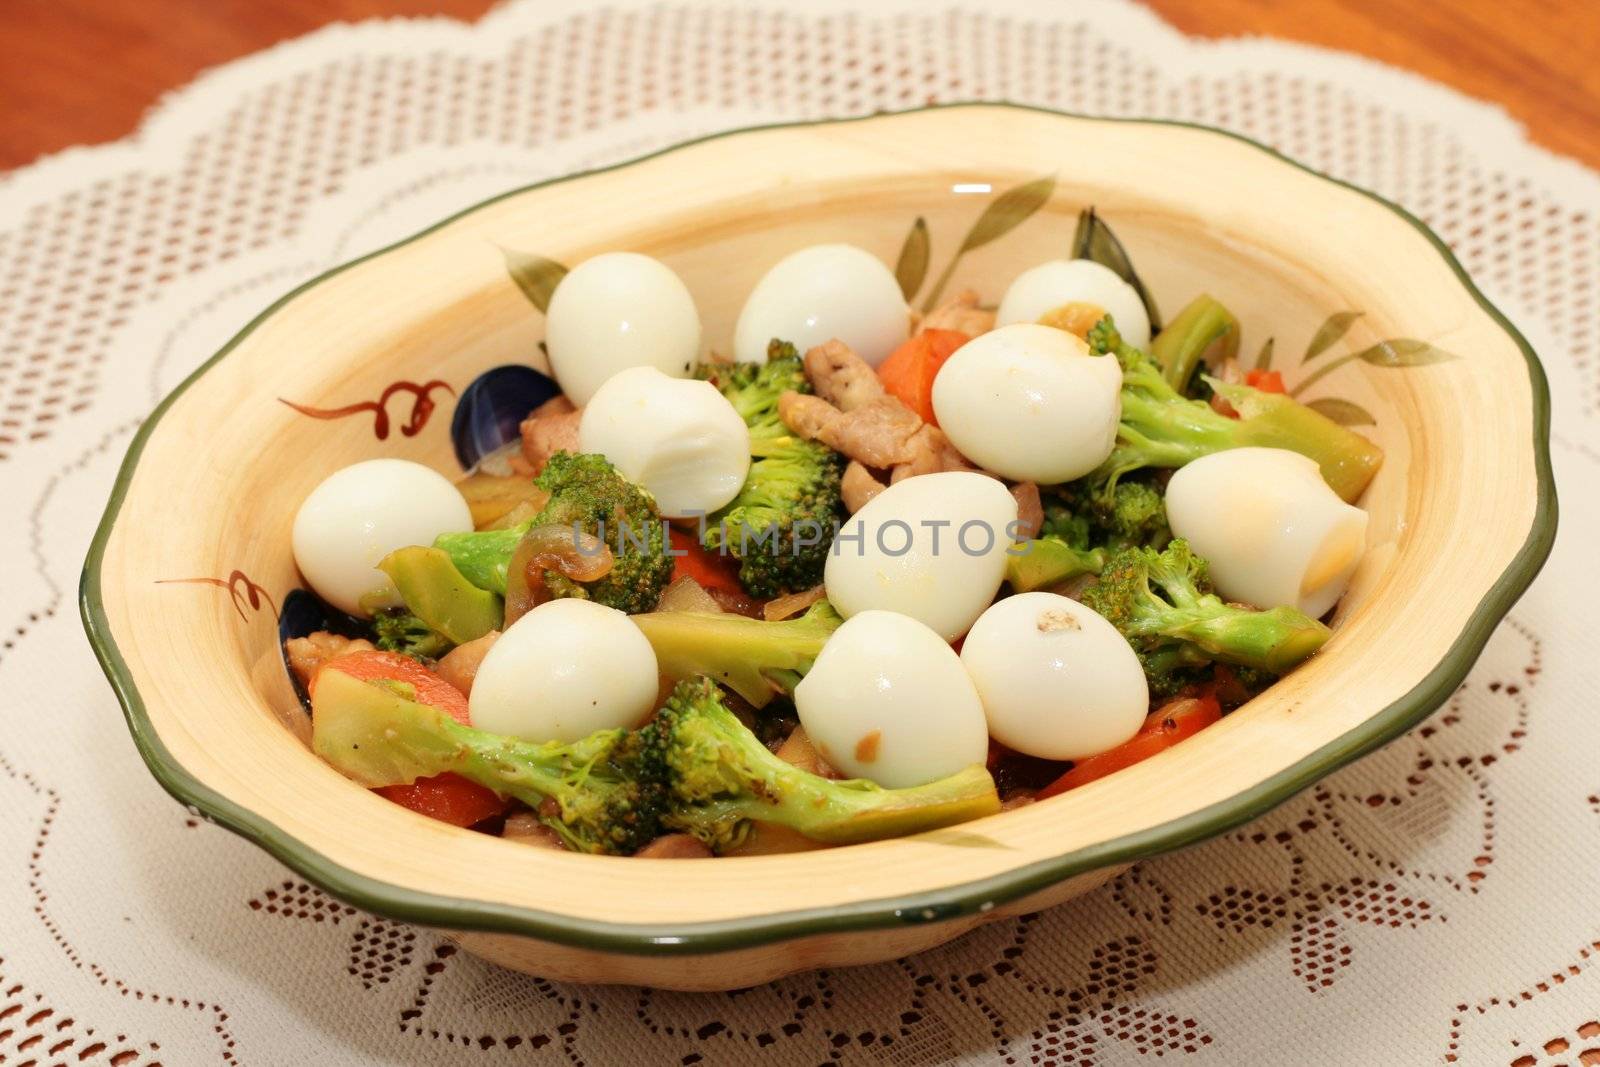 broccoli with quail eggs by jonasbsl